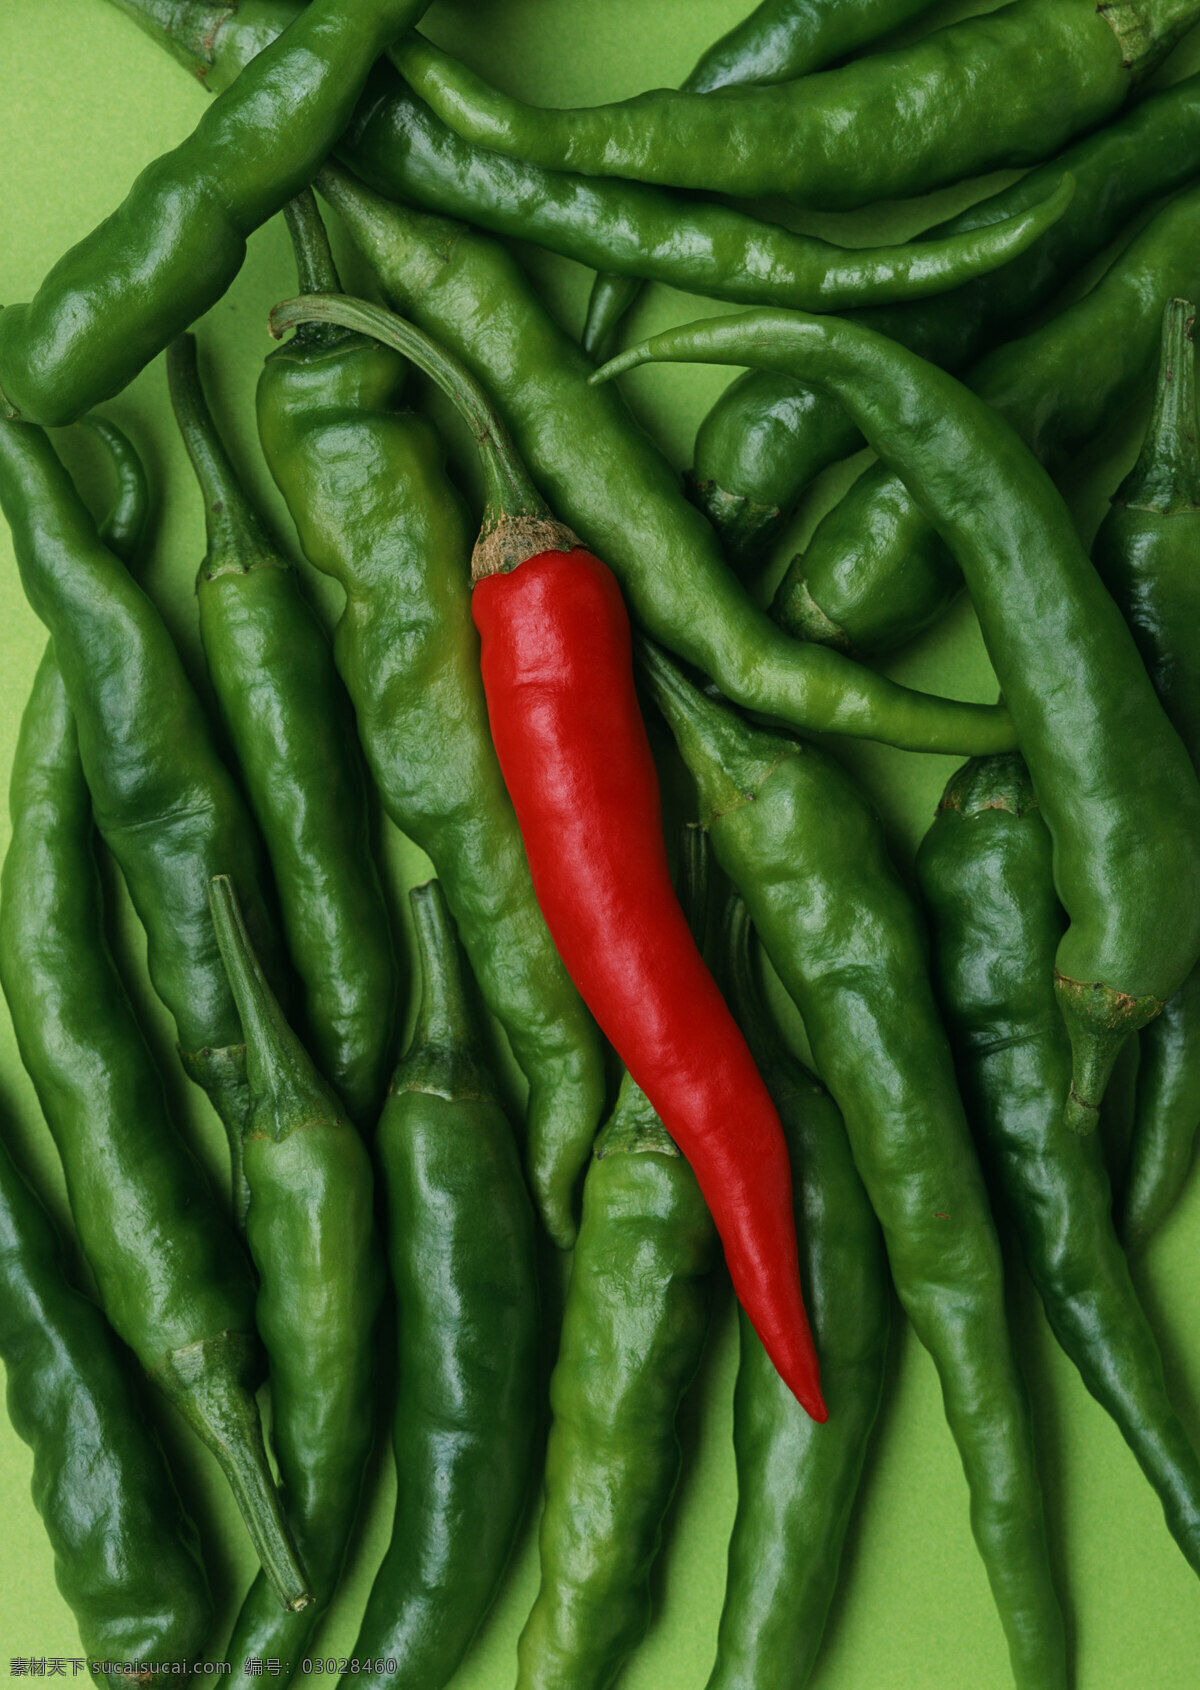 新鲜 辣椒 新鲜蔬菜 农作物 绿色食品 摄影图 高清图片 蔬菜图片 餐饮美食